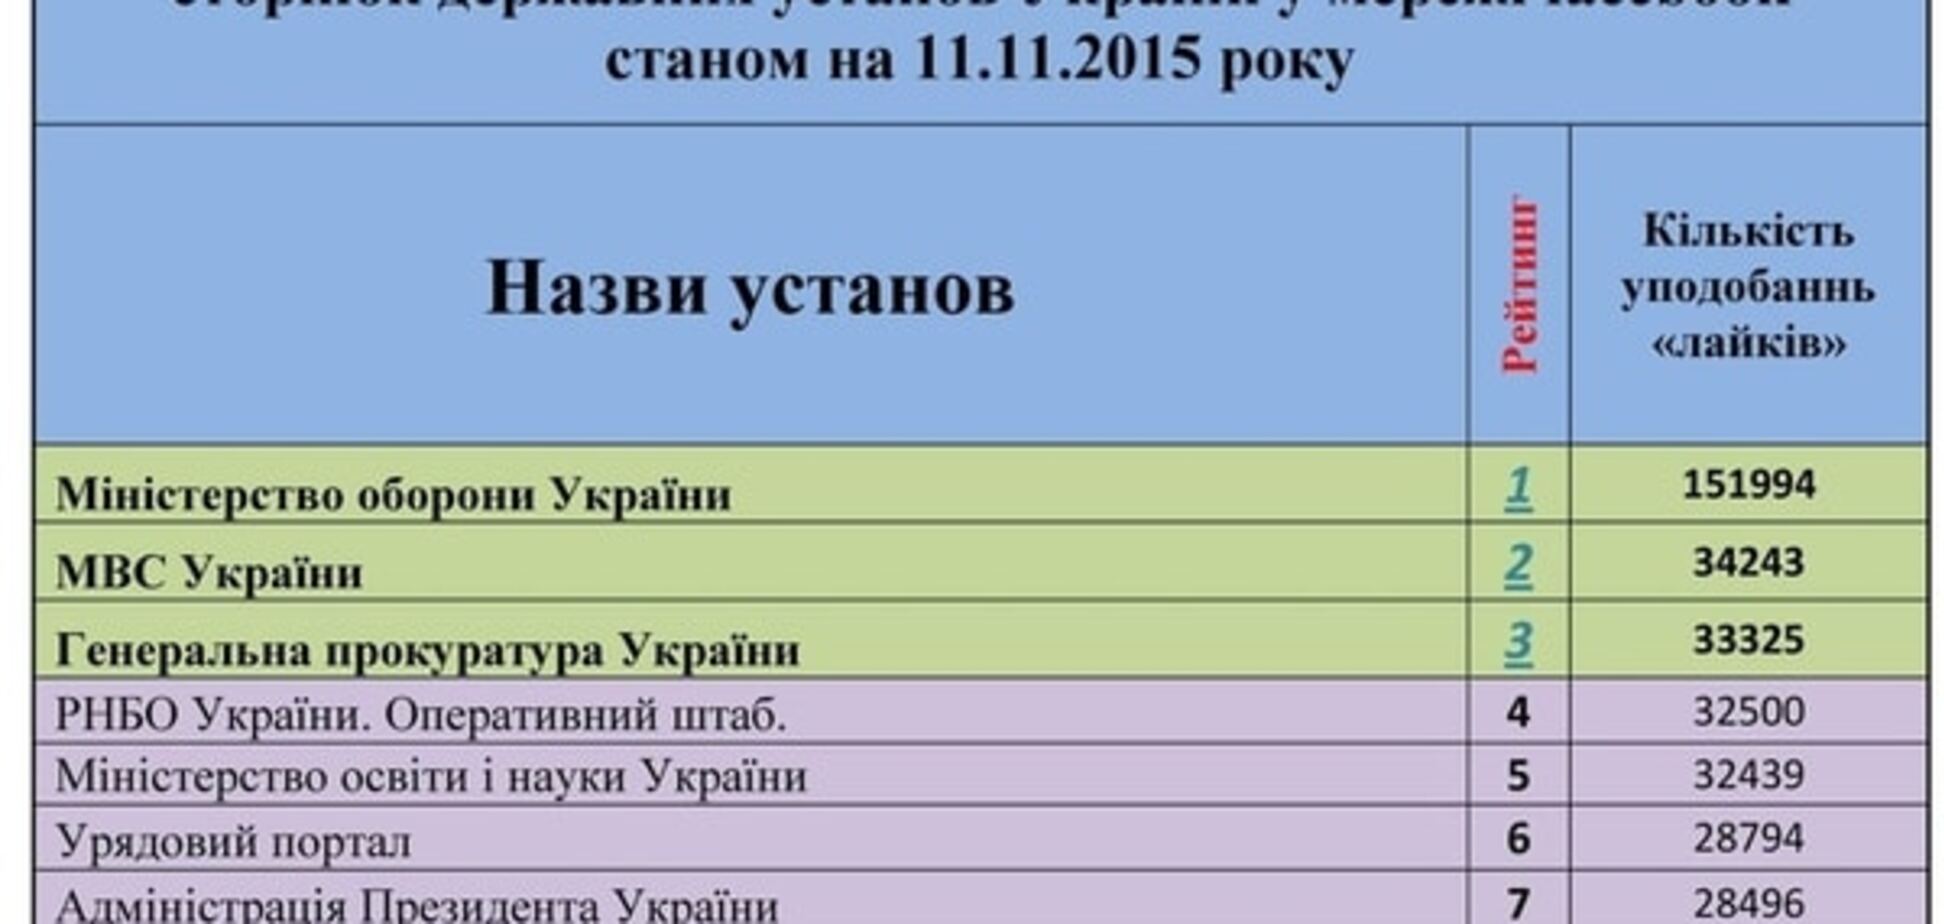 Самые популярные украинские ведомства в сети: опубликован рейтинг